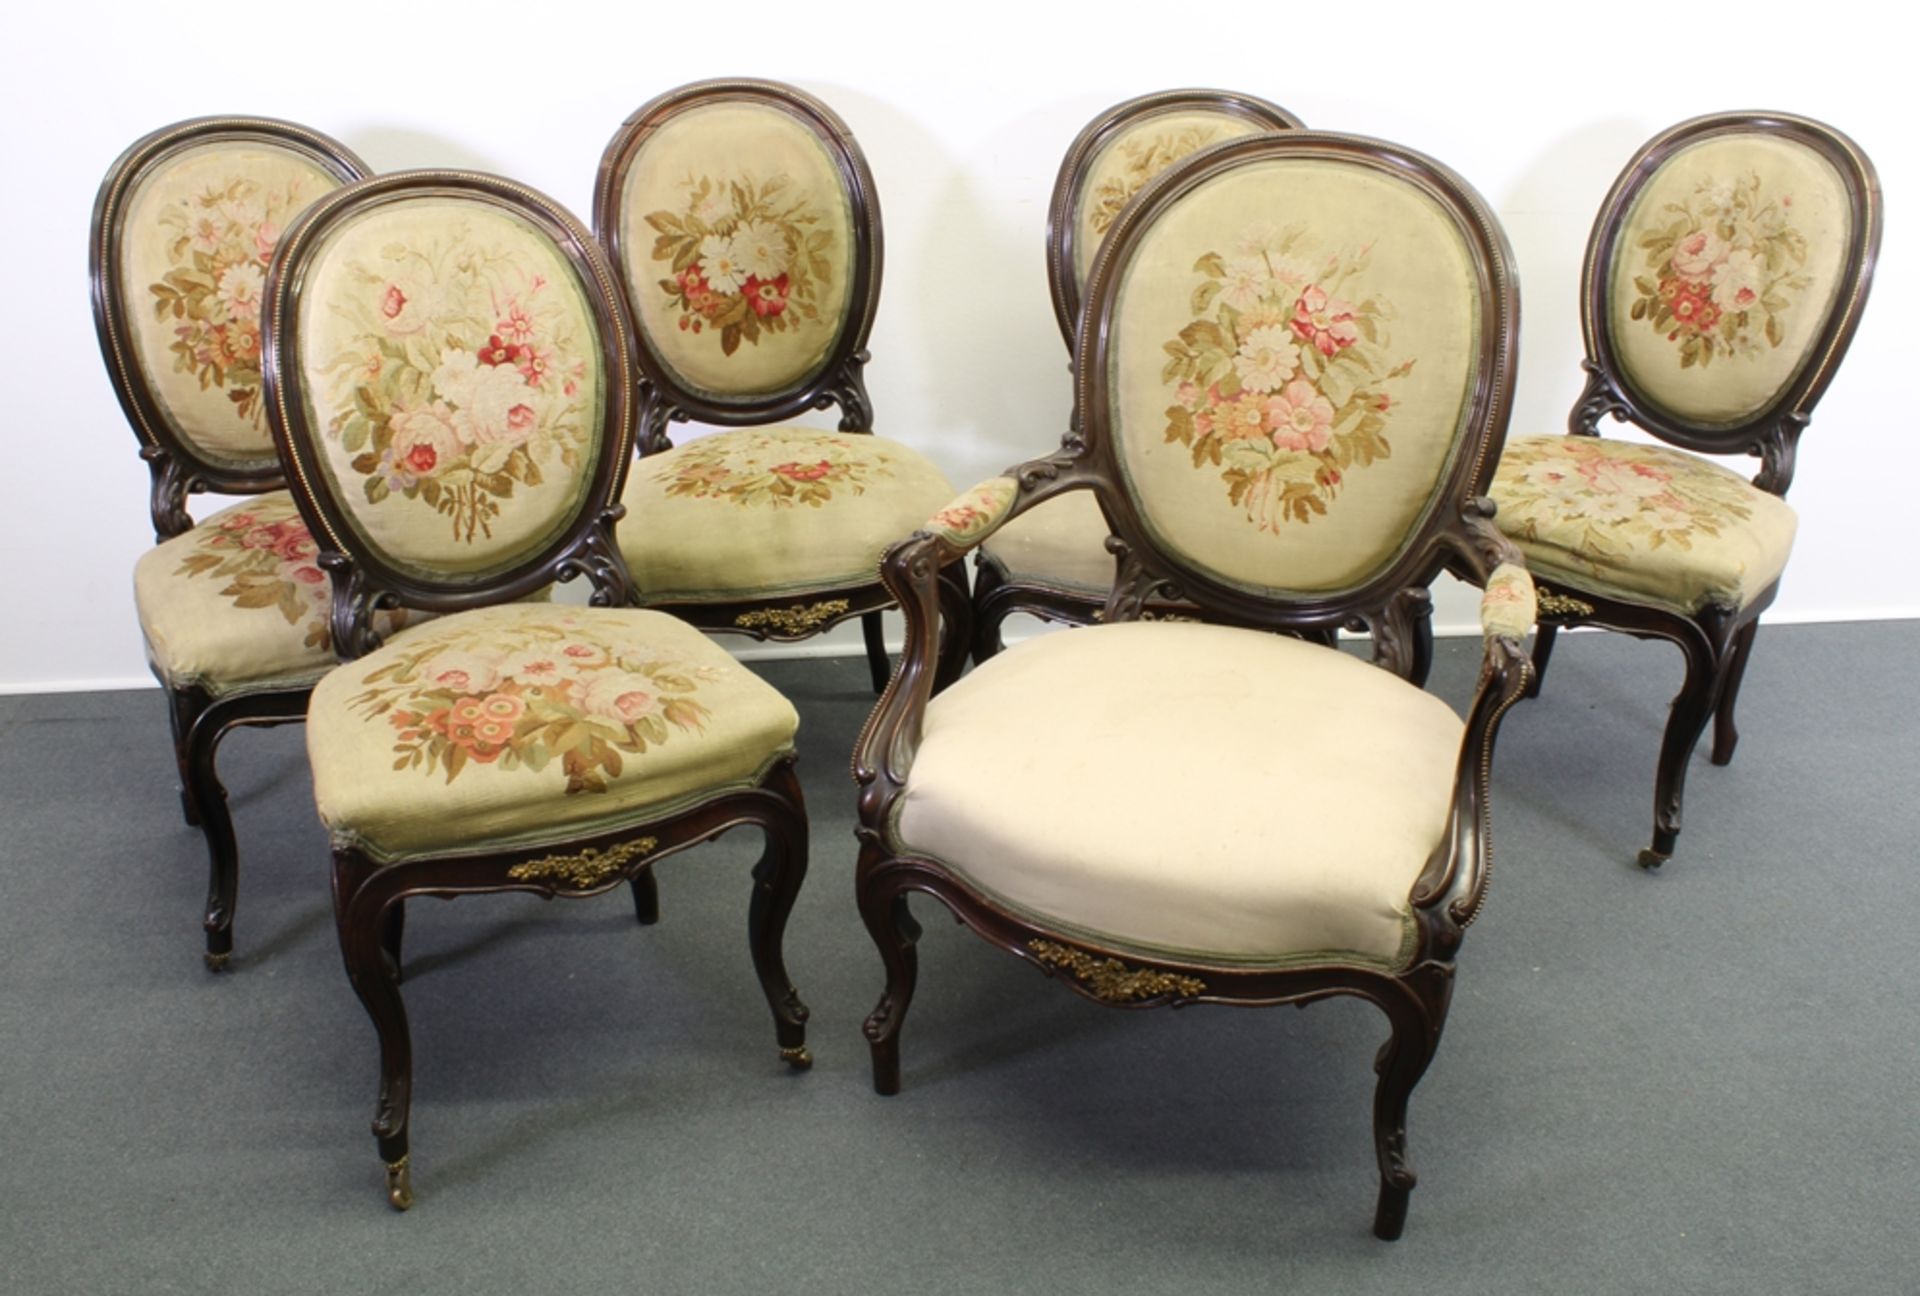 Sitzgruppe, im Barock-Stil, um 1870/80, fünf Stühle, ein Fauteuil, ein Récamiere, Rückenlehnen in M - Bild 5 aus 7